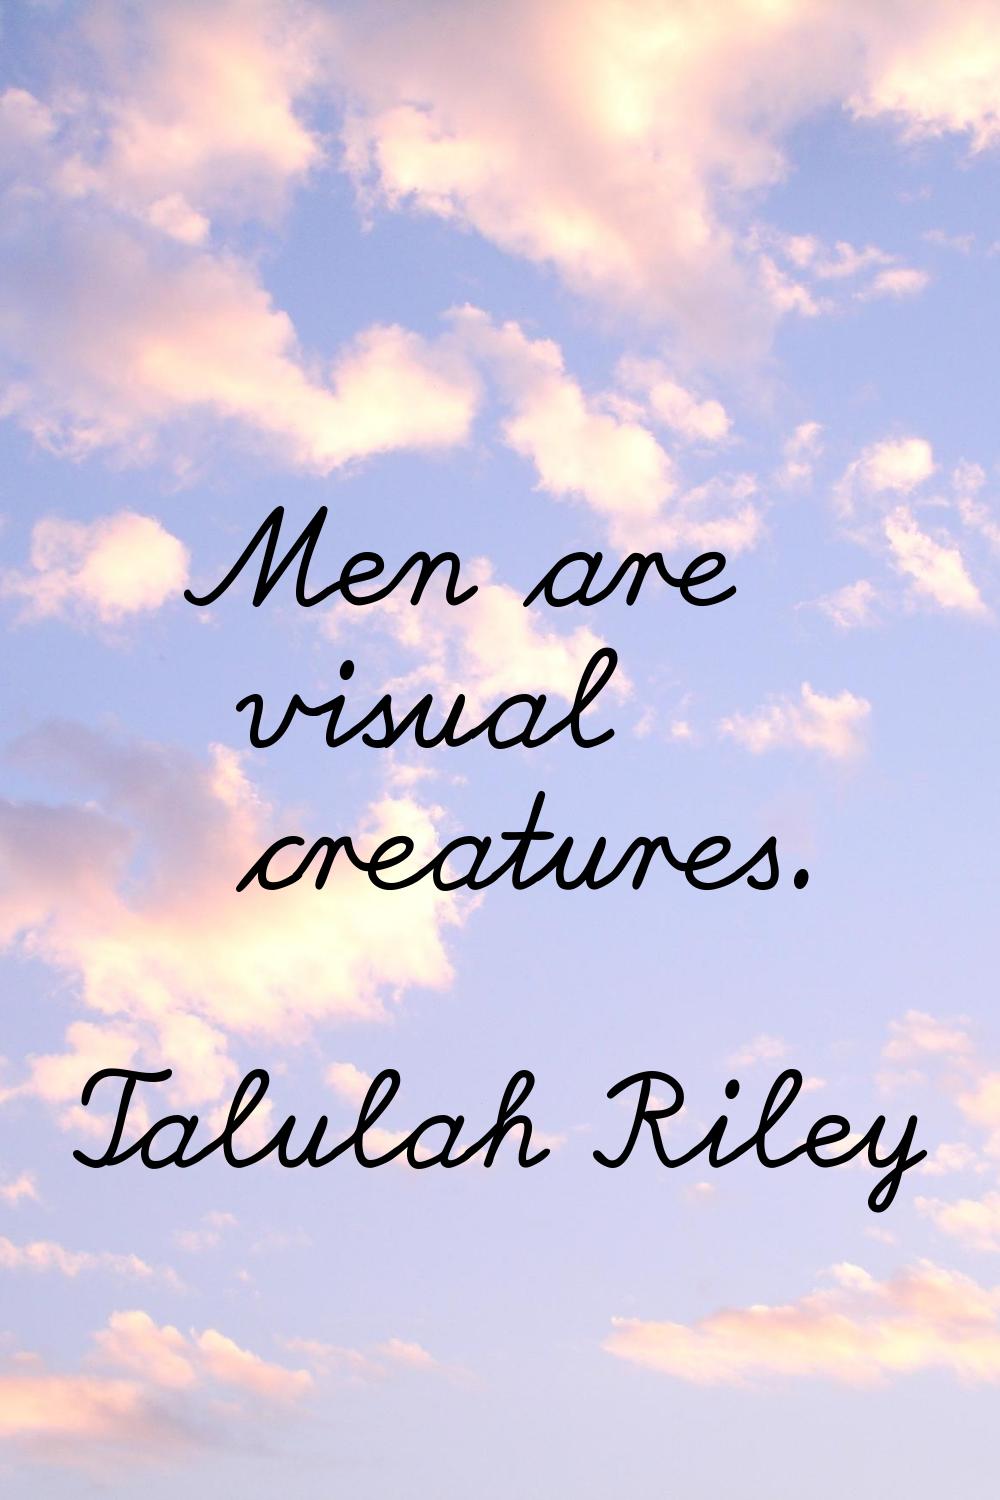 Men are visual creatures.